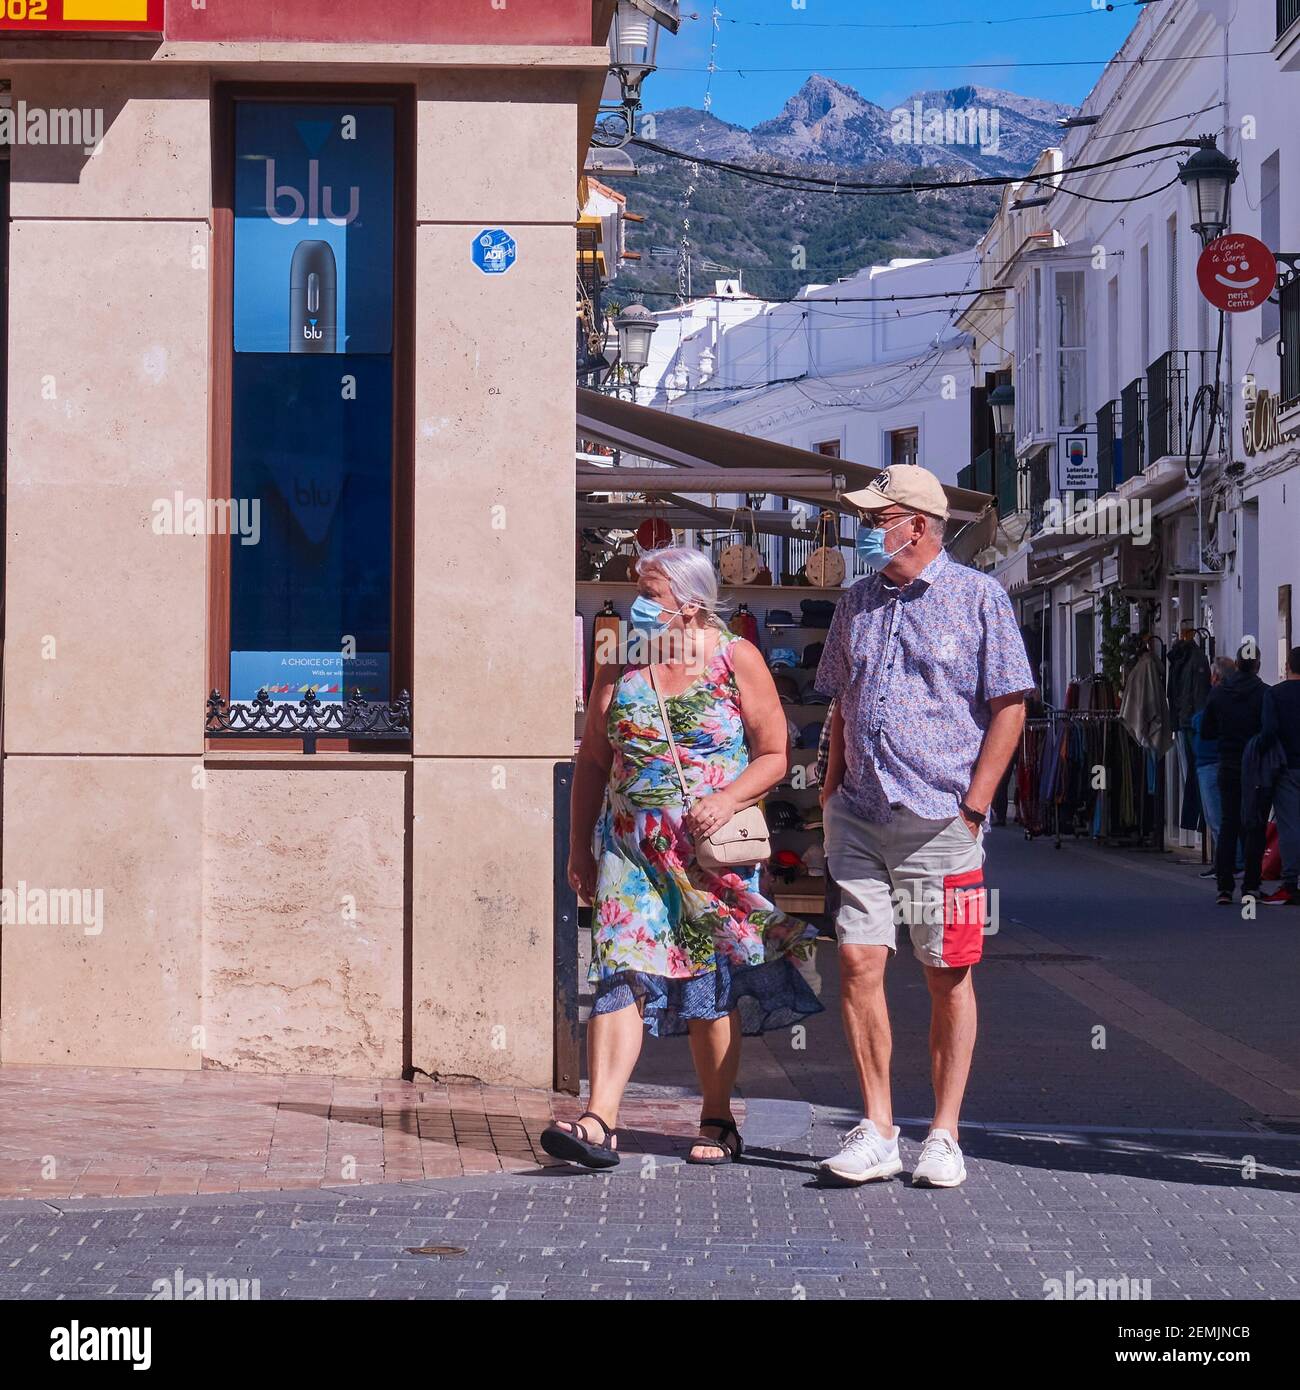 Vorderansicht eines Touristen-Paares, das Covid-Masken trägt, während sie durch die Costa del Sol-Resortstadt Nerja, Malaga, Spanien, laufen Stockfoto